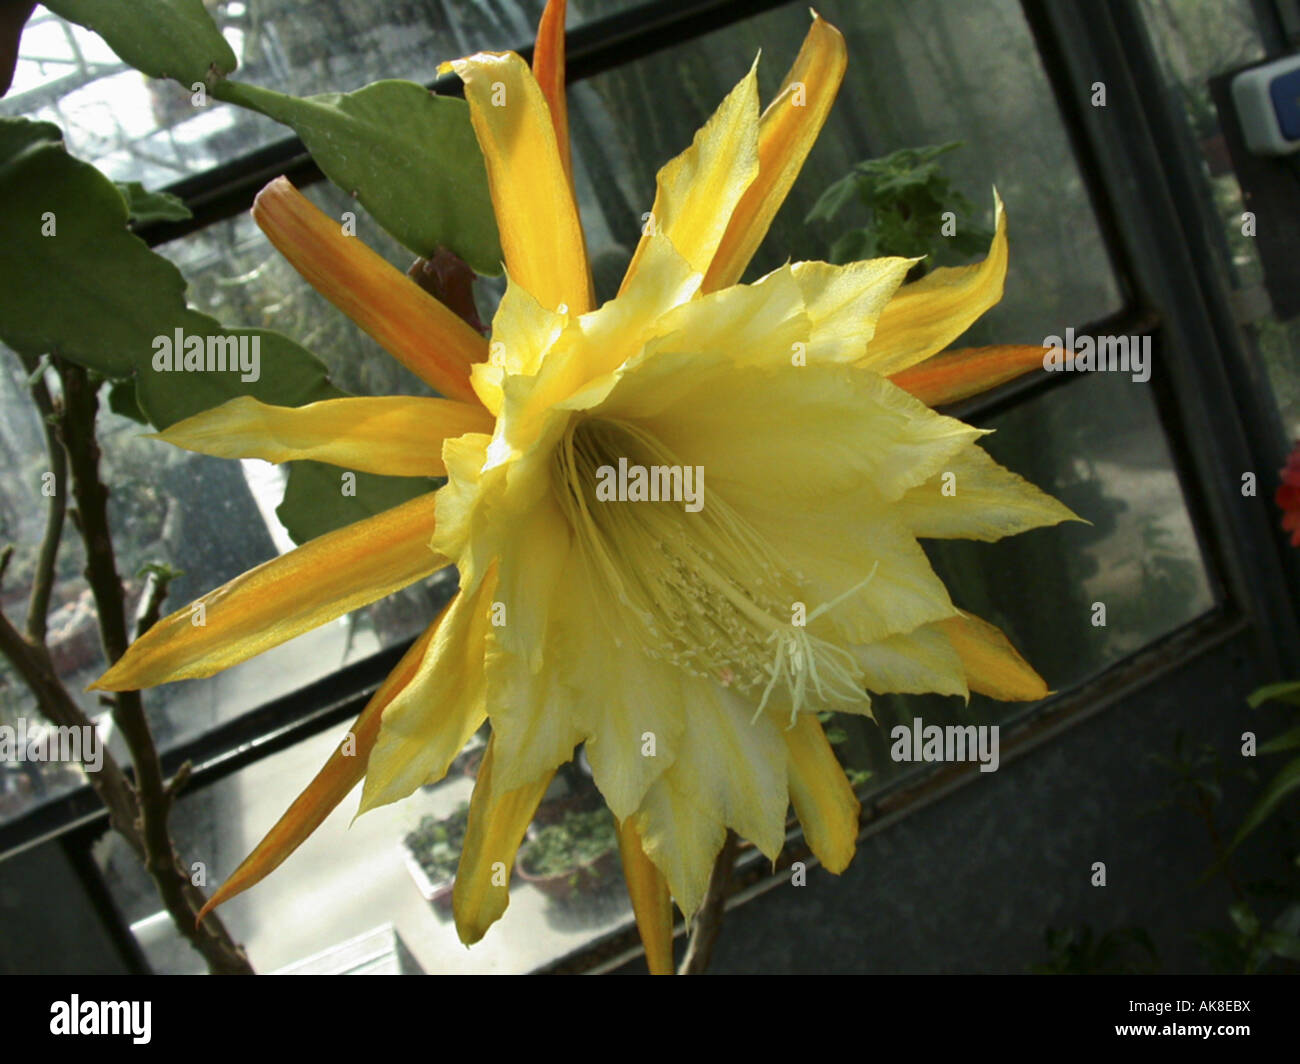 Epiphyllum hybrid (Epiphyllum 'George French', Epiphyllum George French, Epiphyllum-Hybride), flower Stock Photo